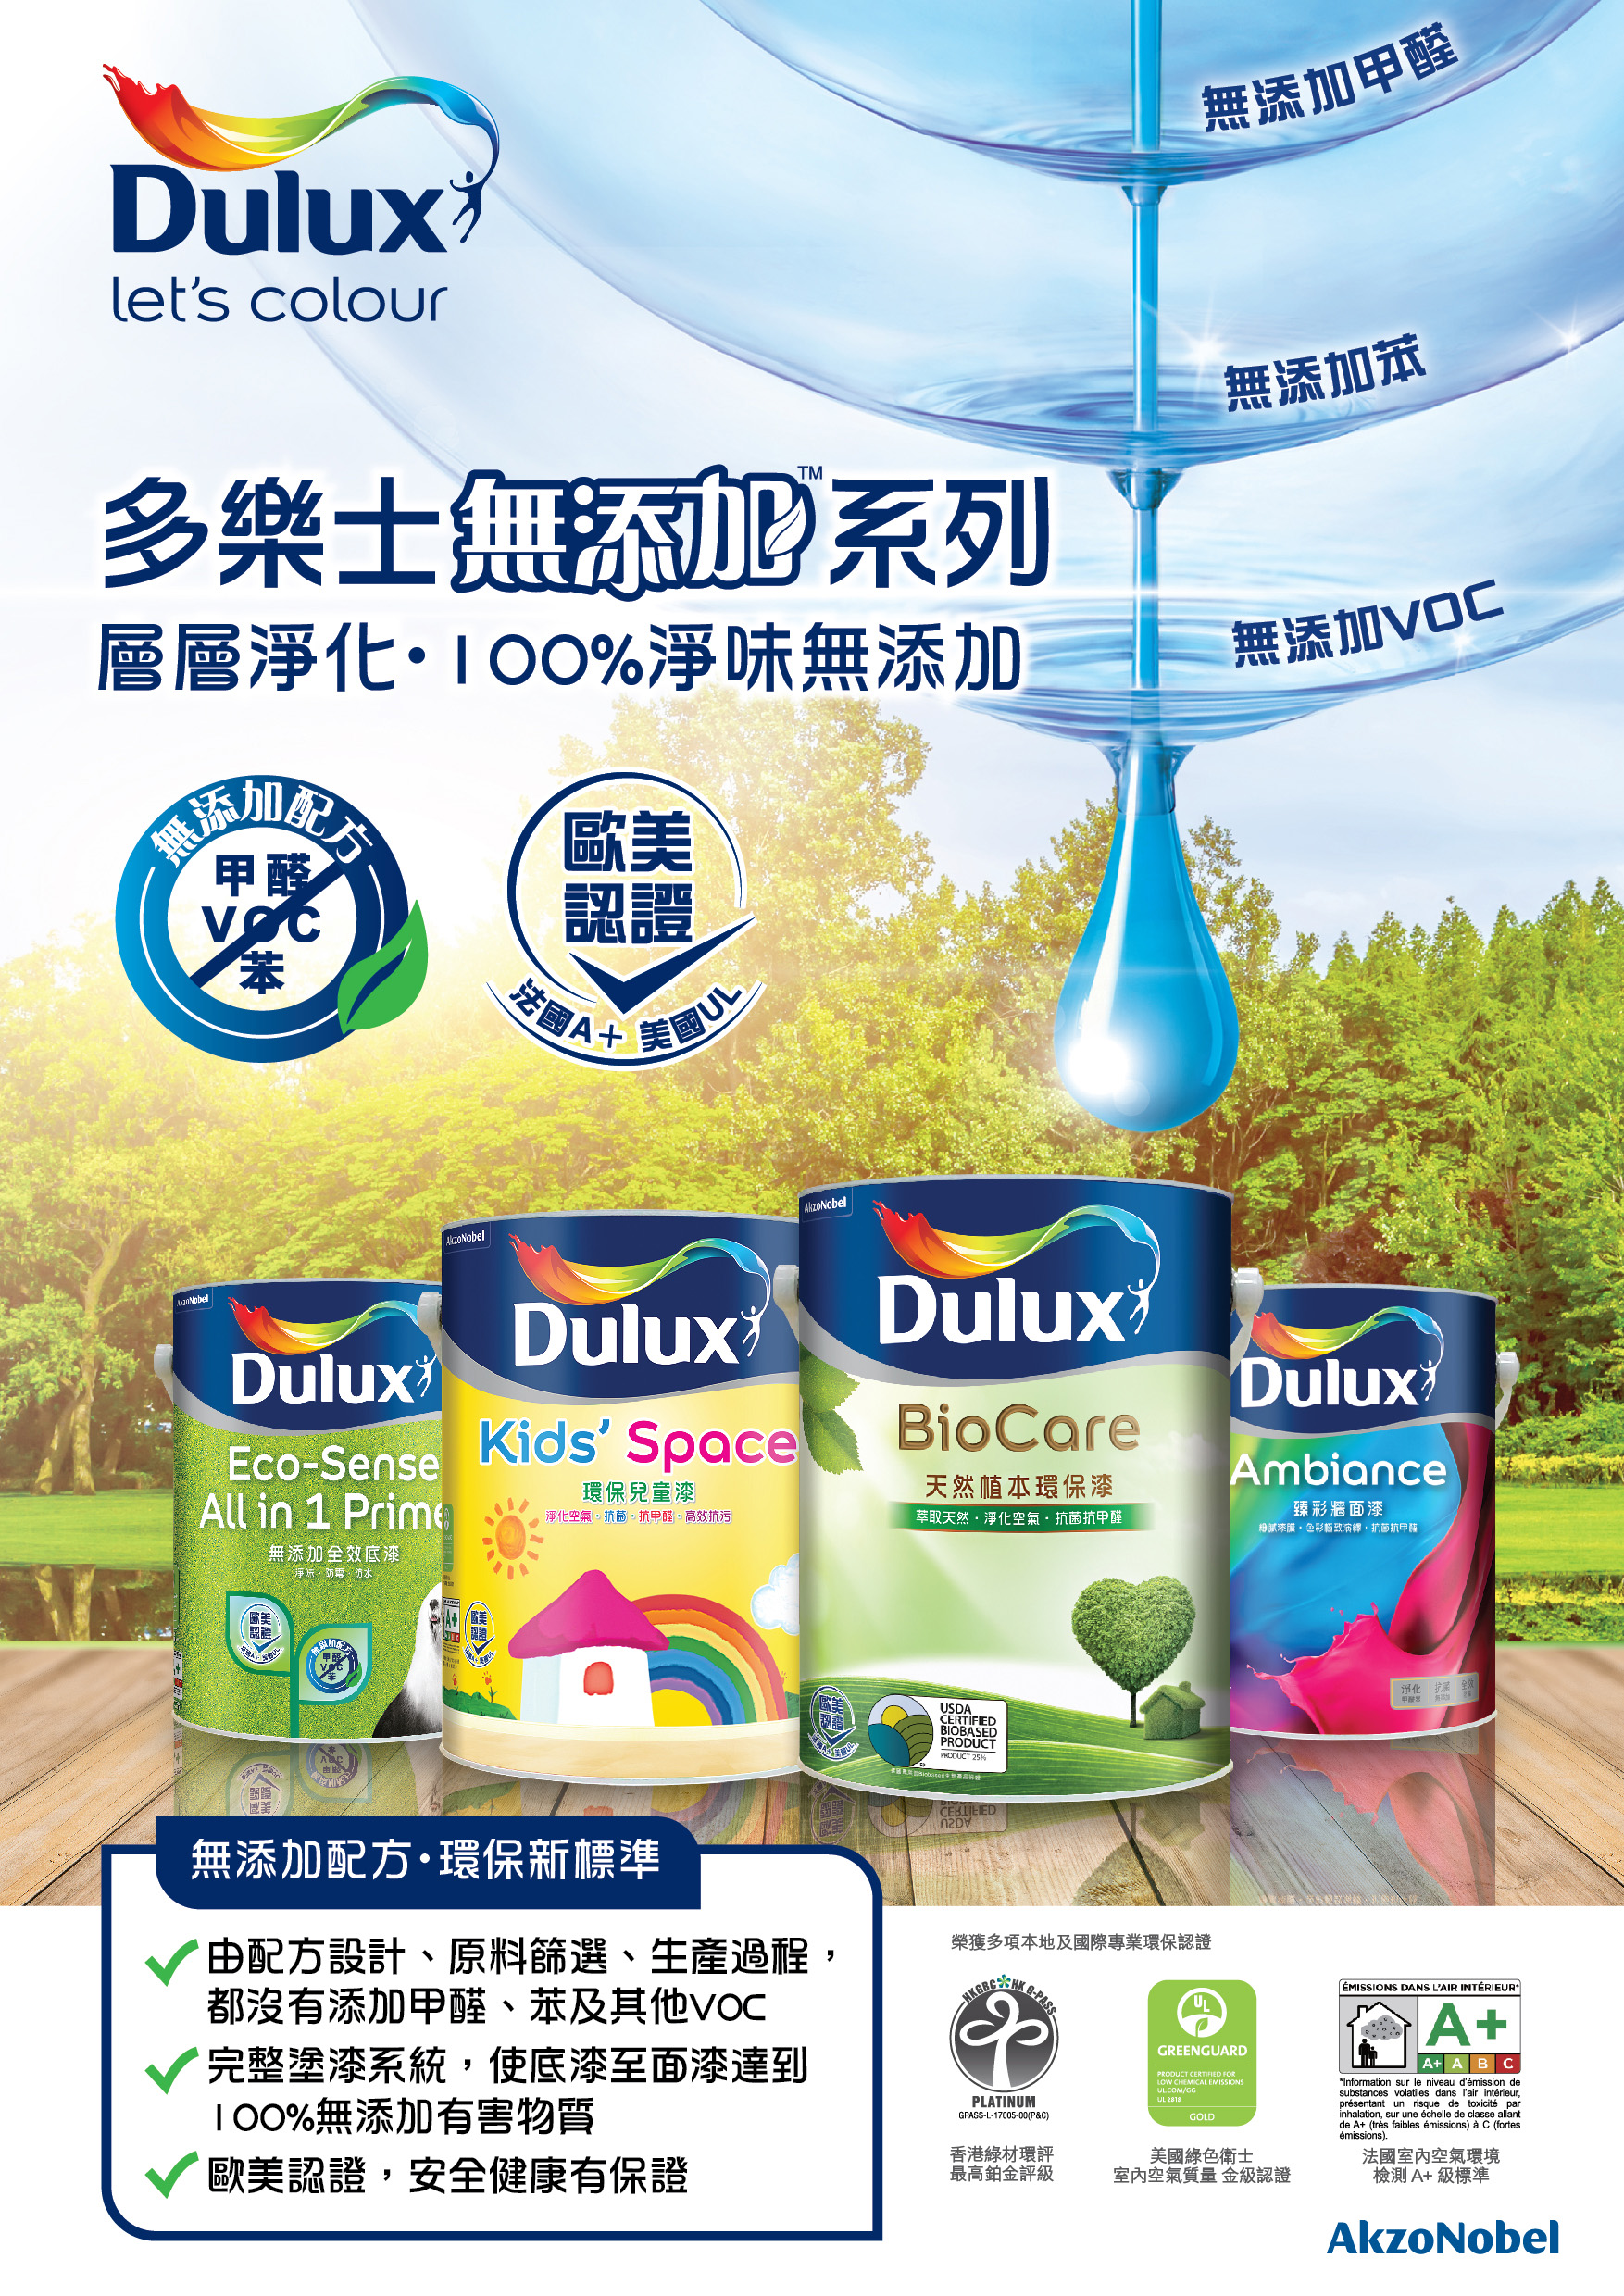 Dulux, Eco-sense All-in-1 Primer 5L, Color : White